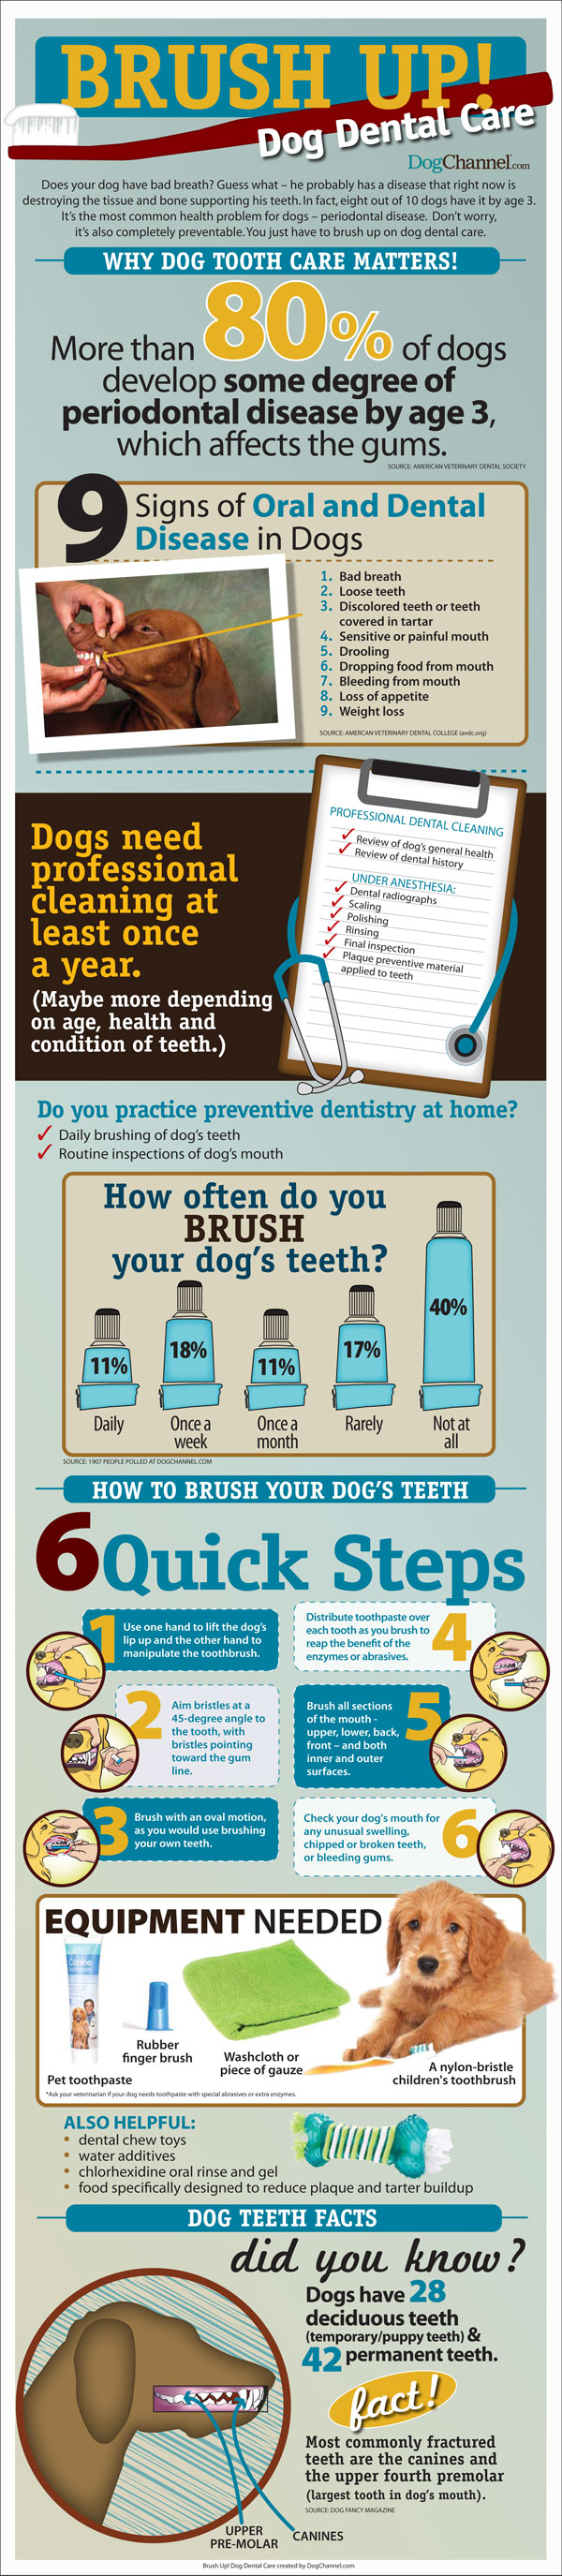 Brush Up On Dog Dental Care!